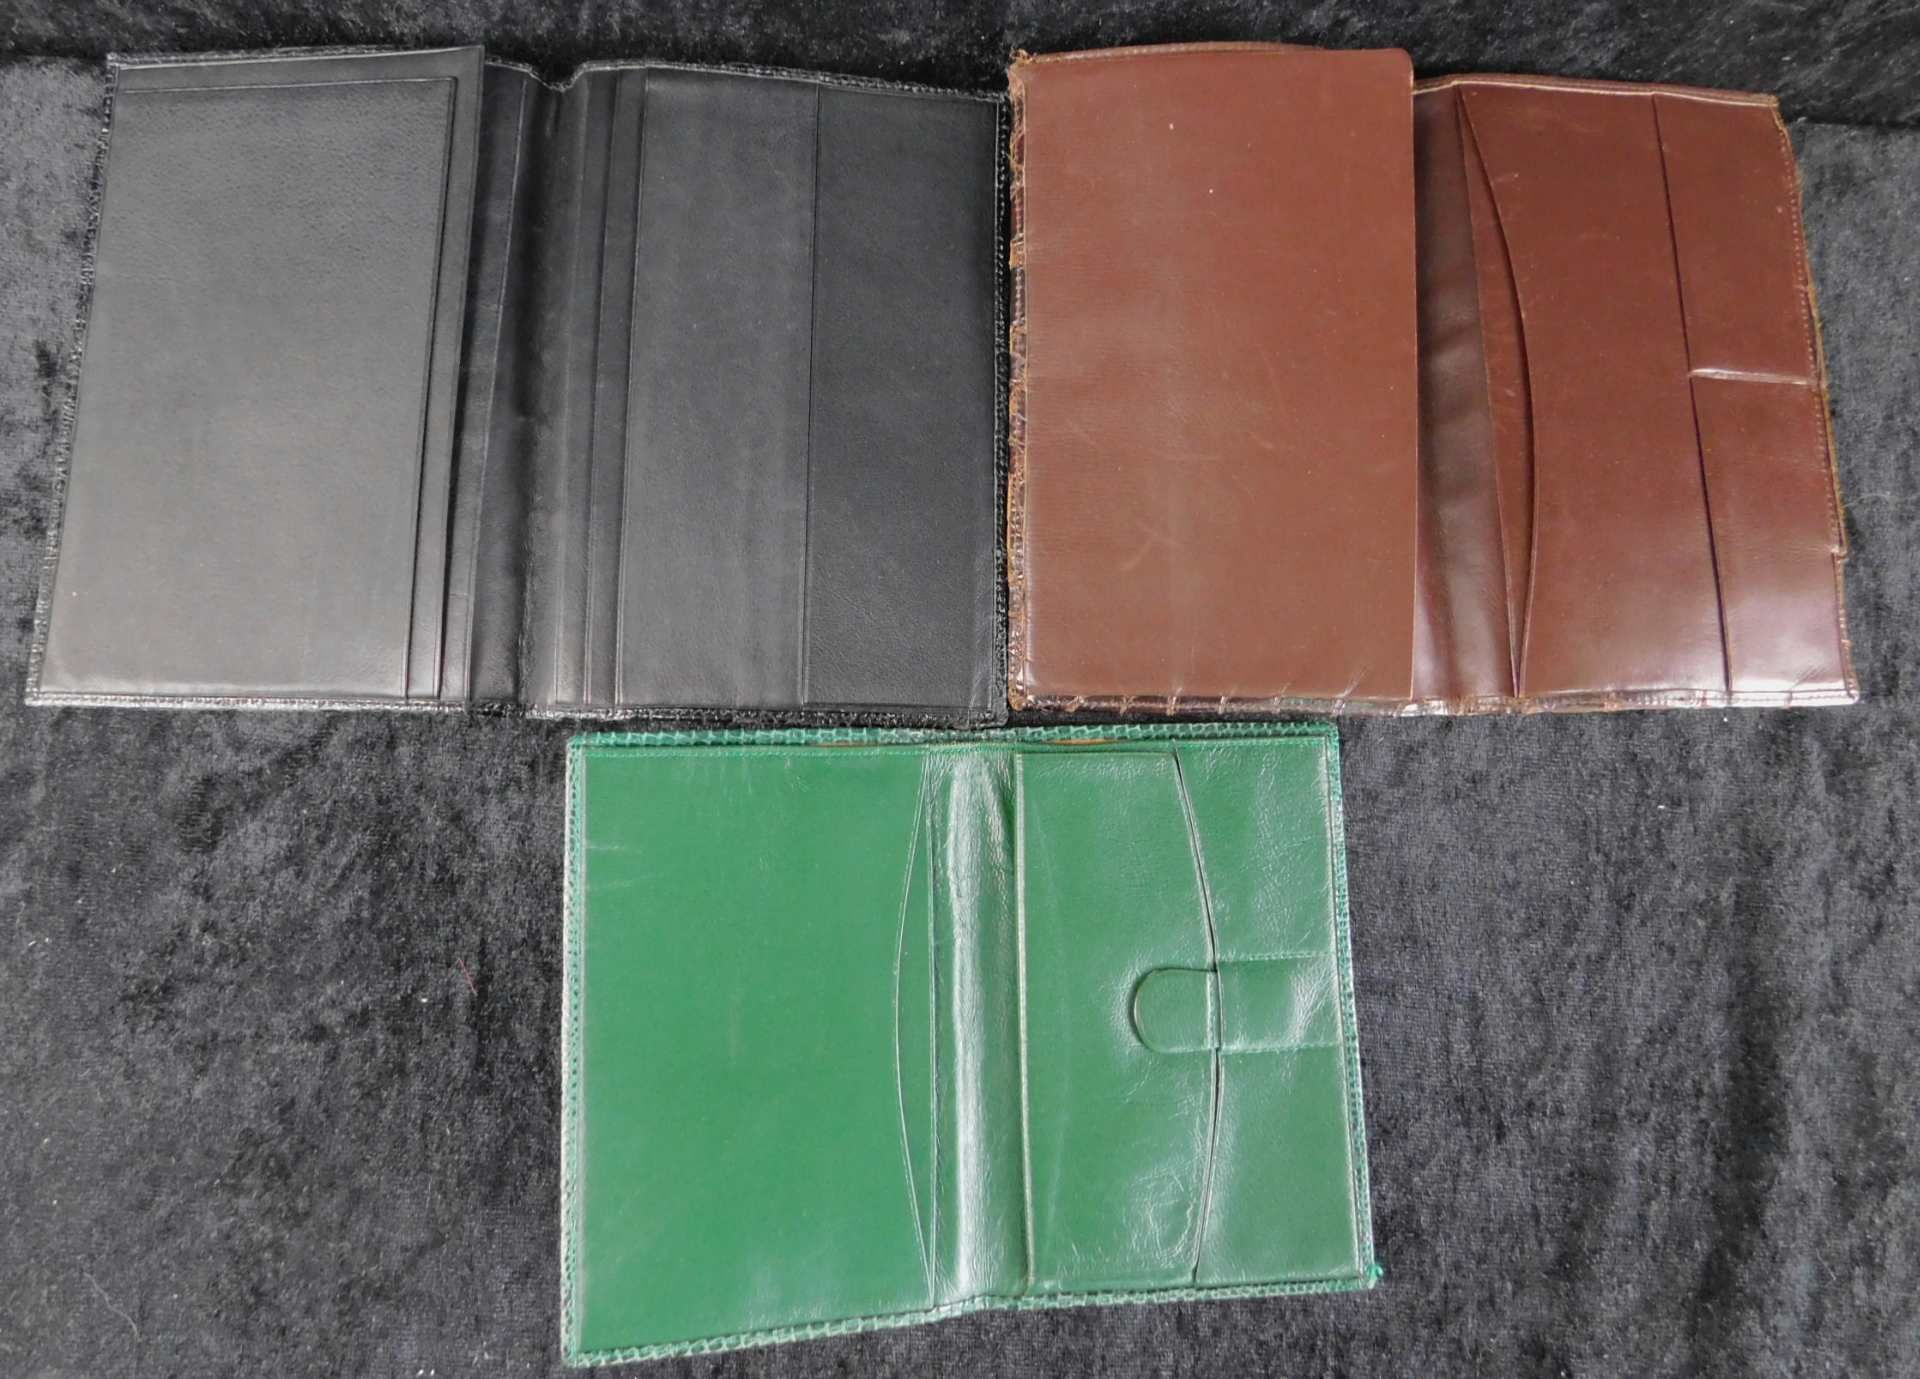 3 Brieftaschen, Reptilleder, 1970 er Jahre, schwarz, braun u. grün gefärbt - Image 2 of 2